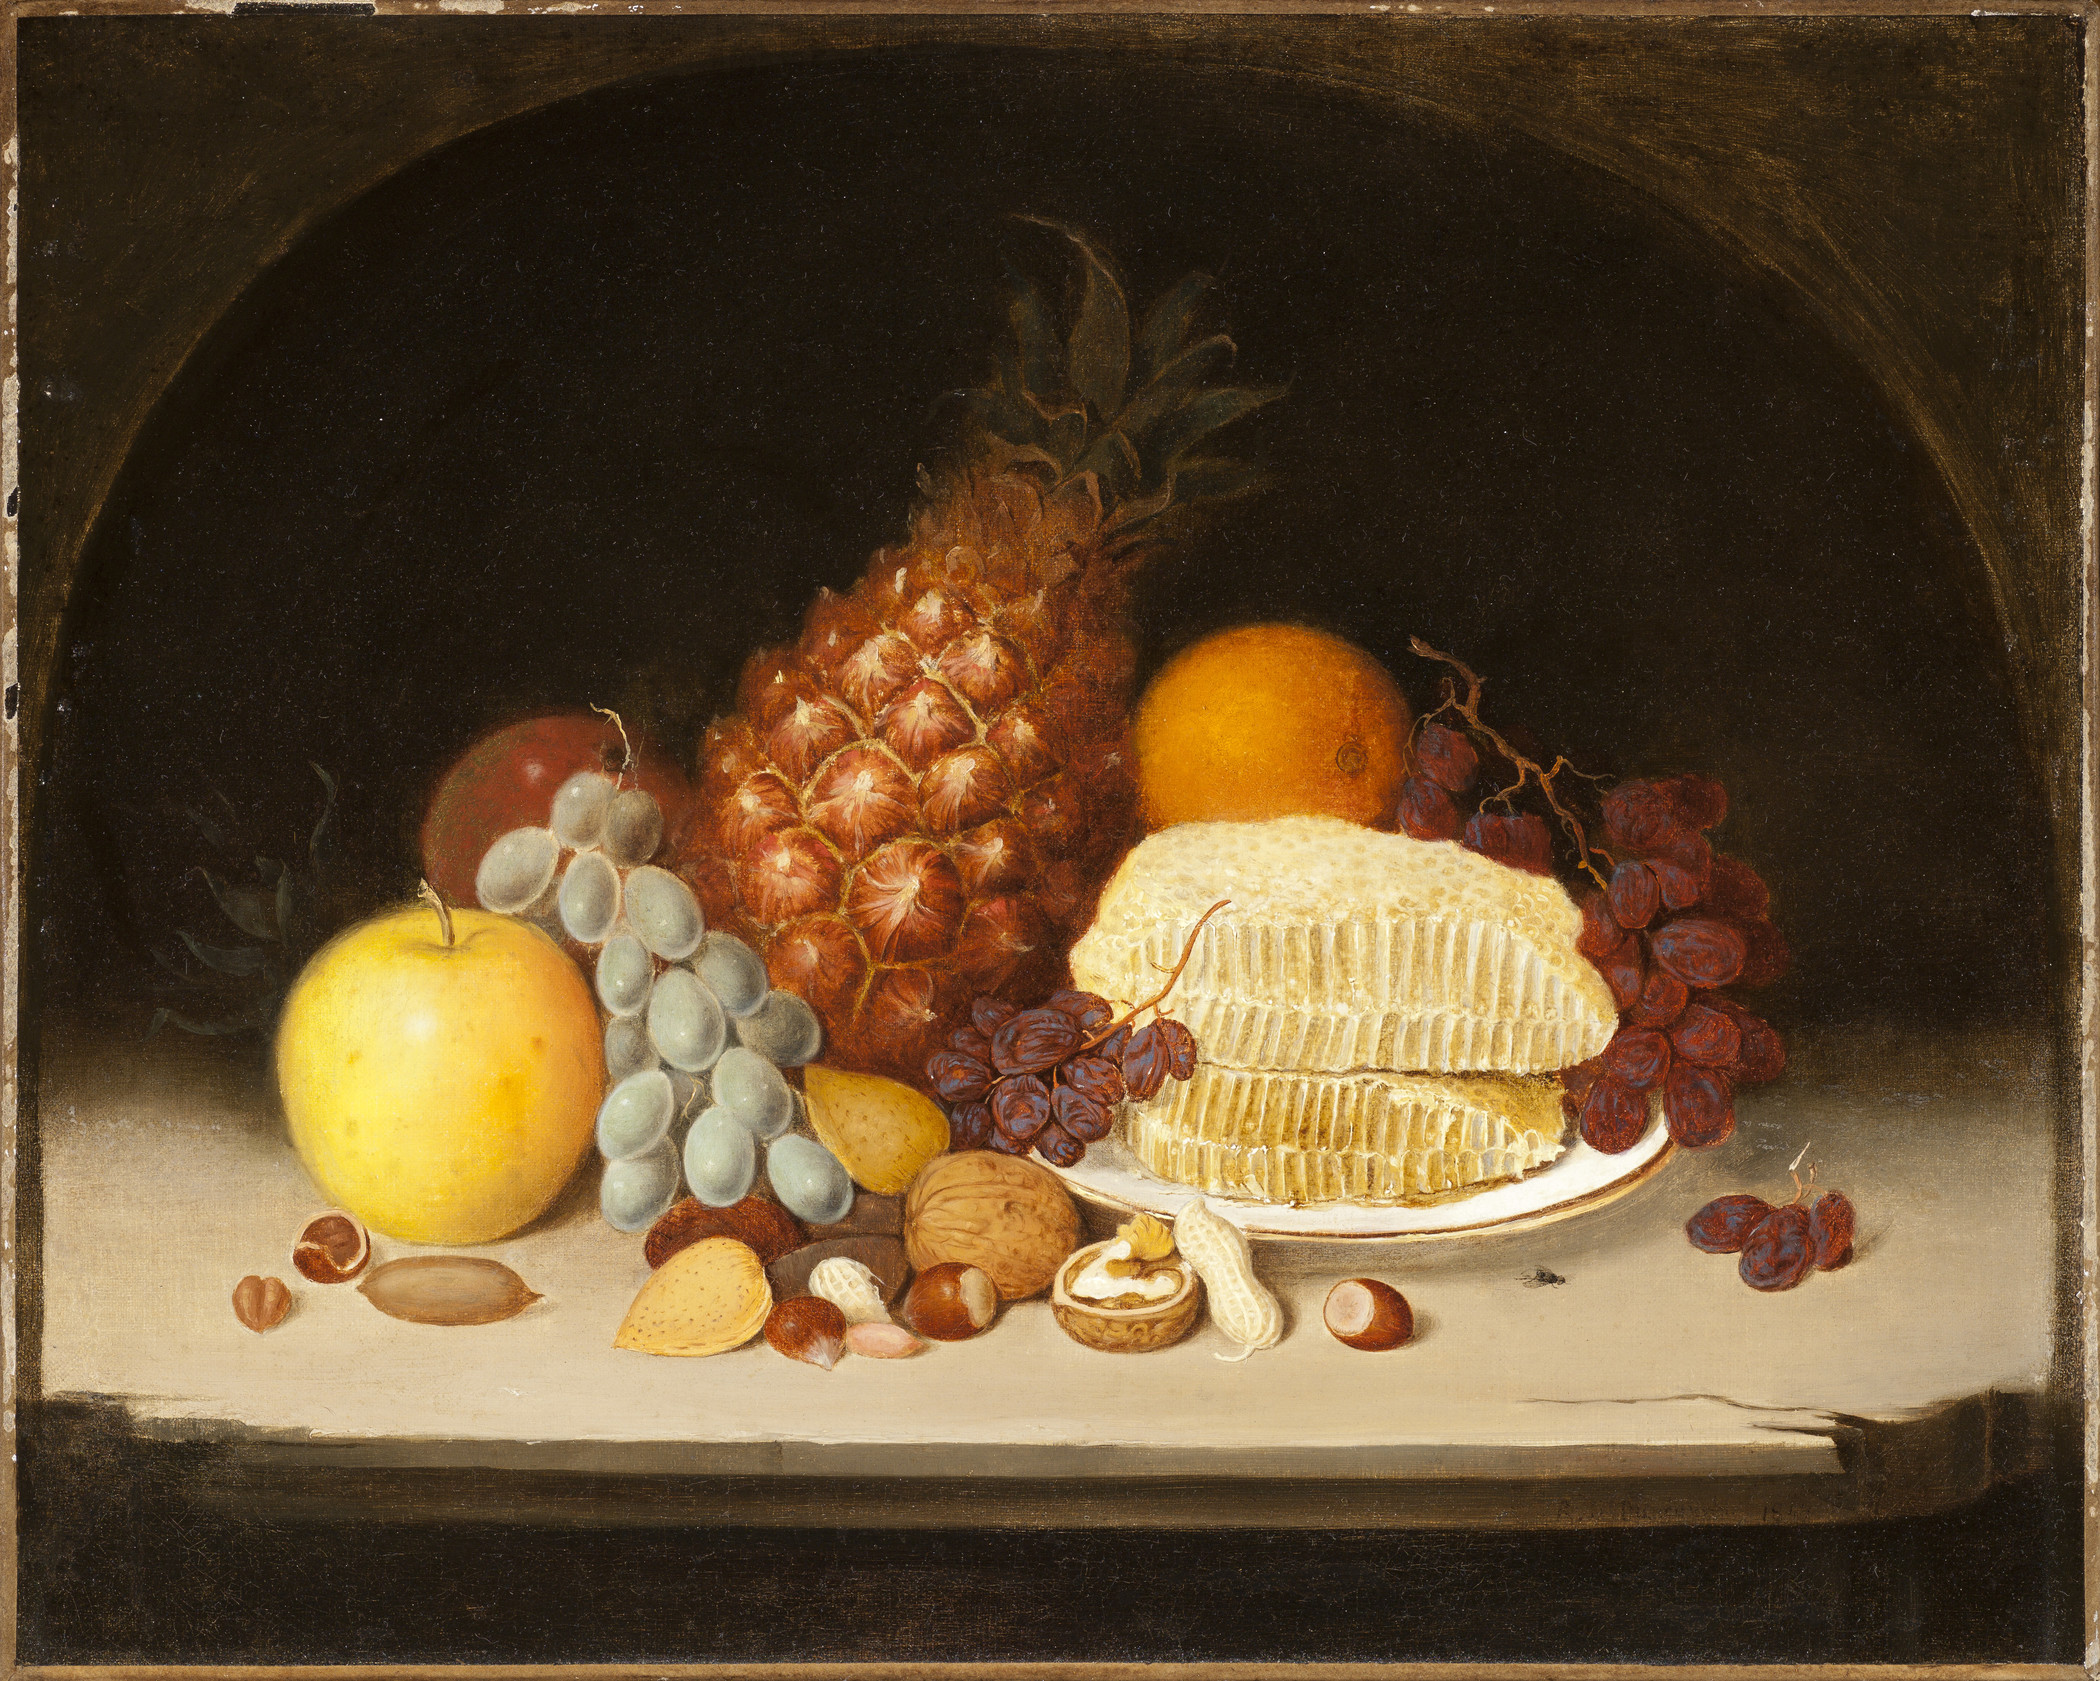 Nature morte by Robert Duncanson - 1849 - 41 x 51,28 cm LACMA, ou Musée d'art du comté de Los Angeles